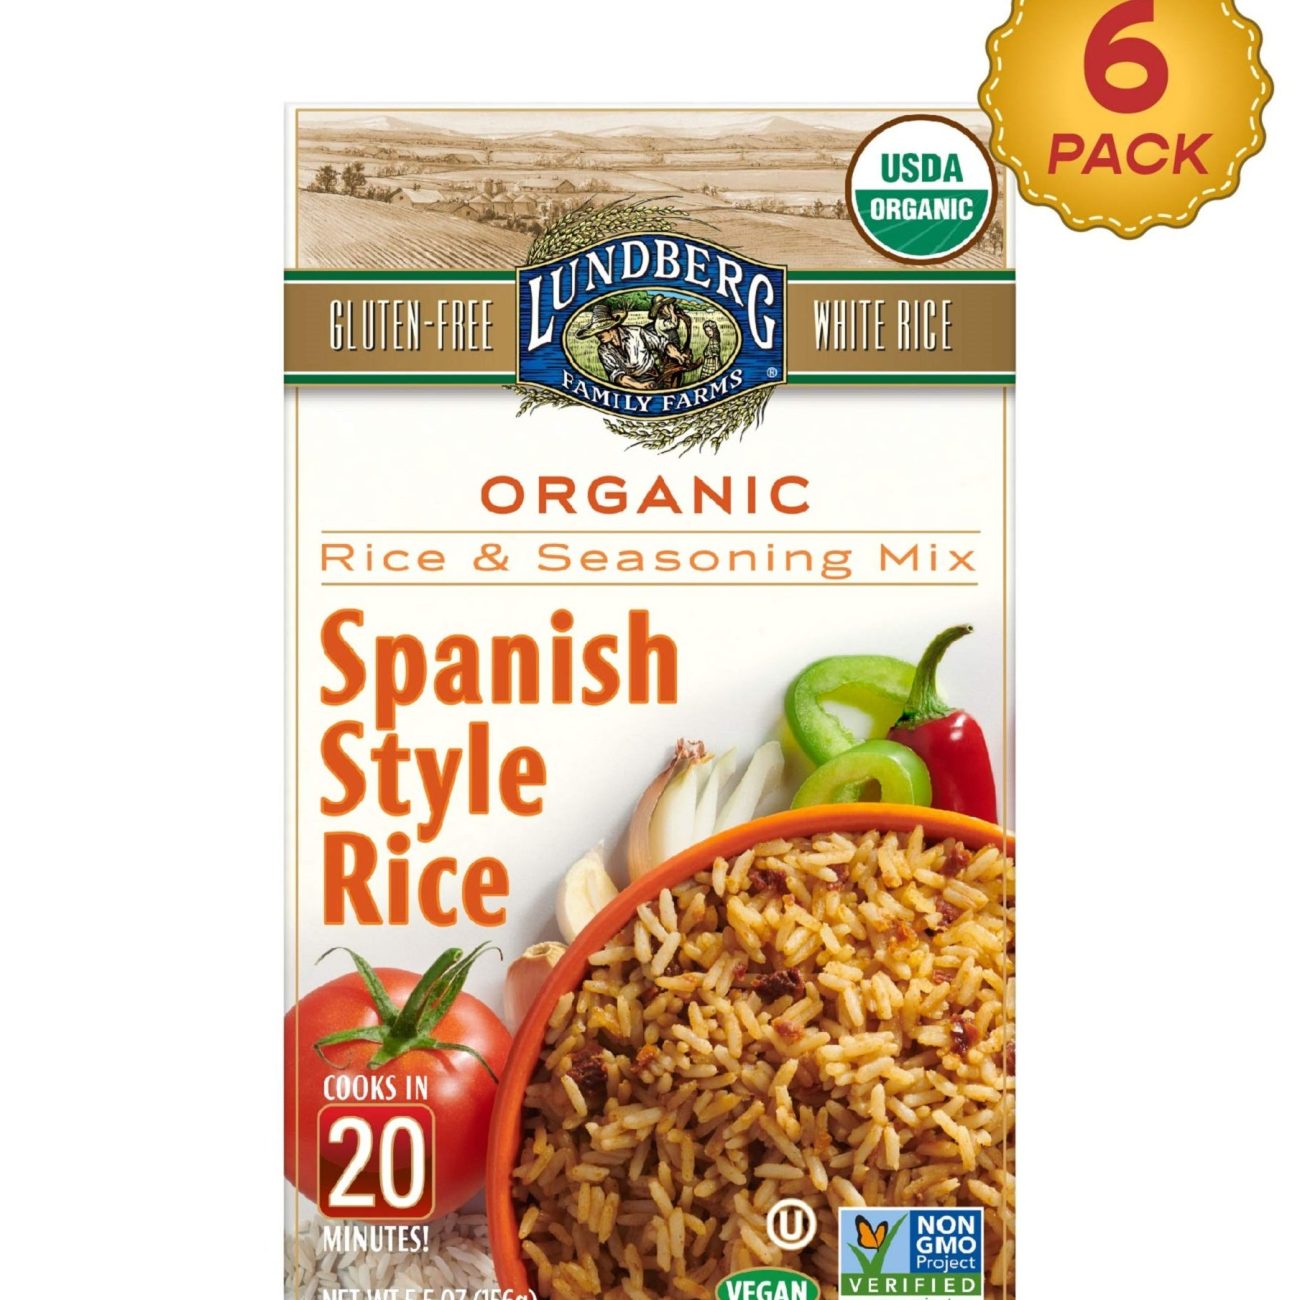 20 Minute Spanish Rice